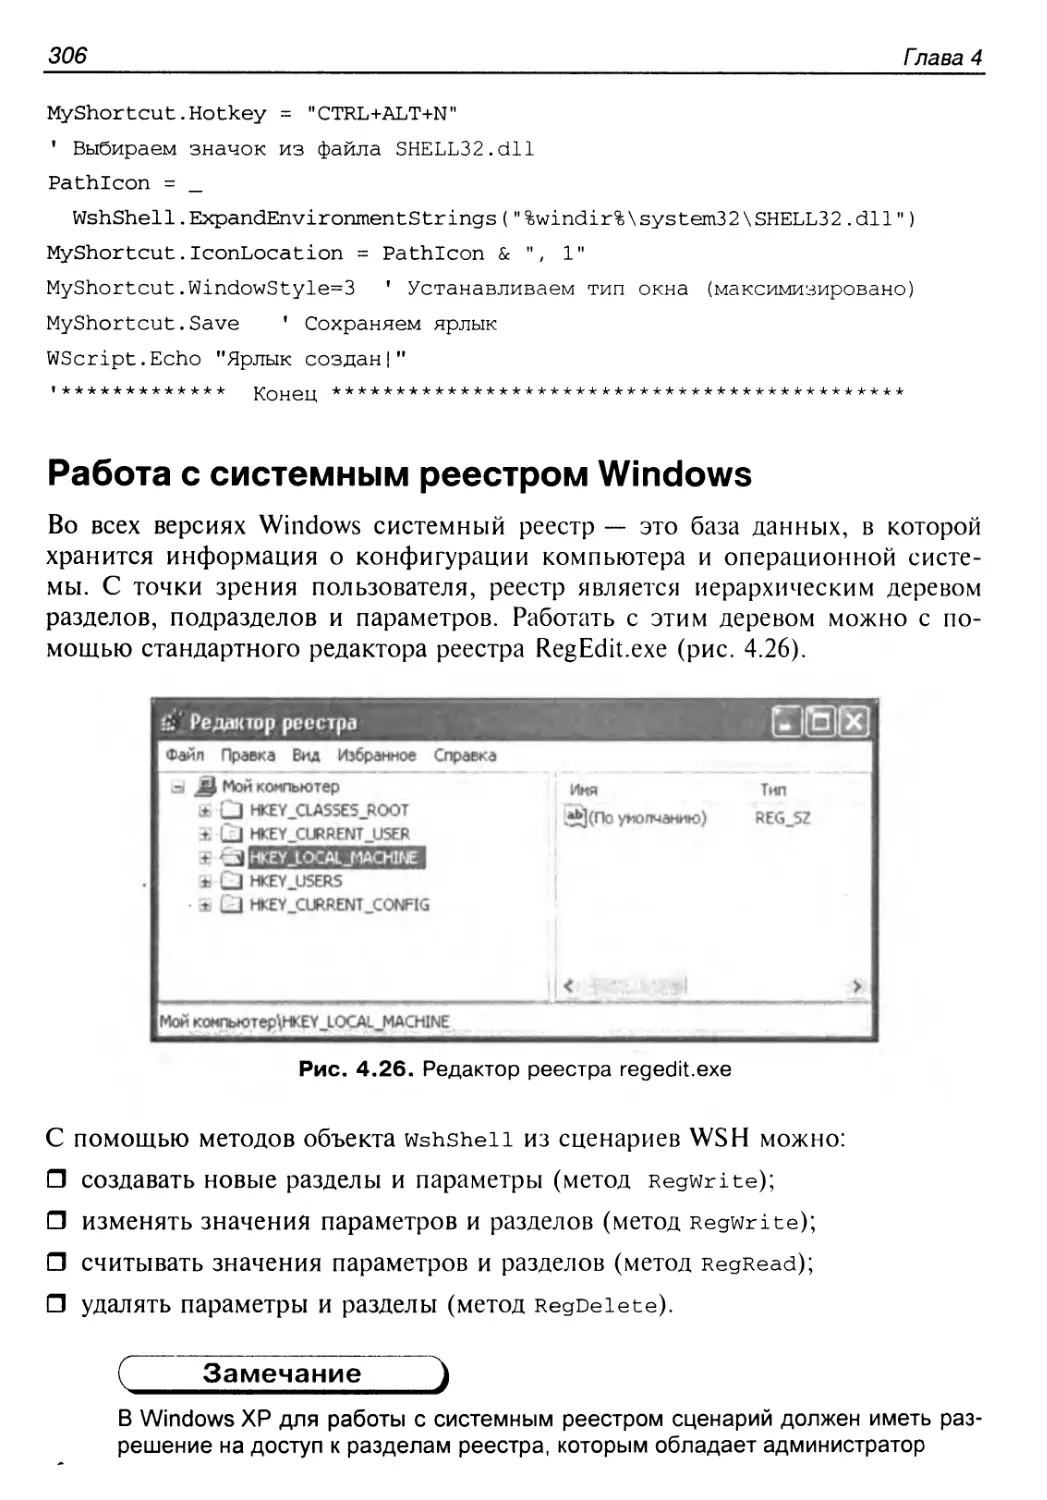 Работа с системным реестром Windows